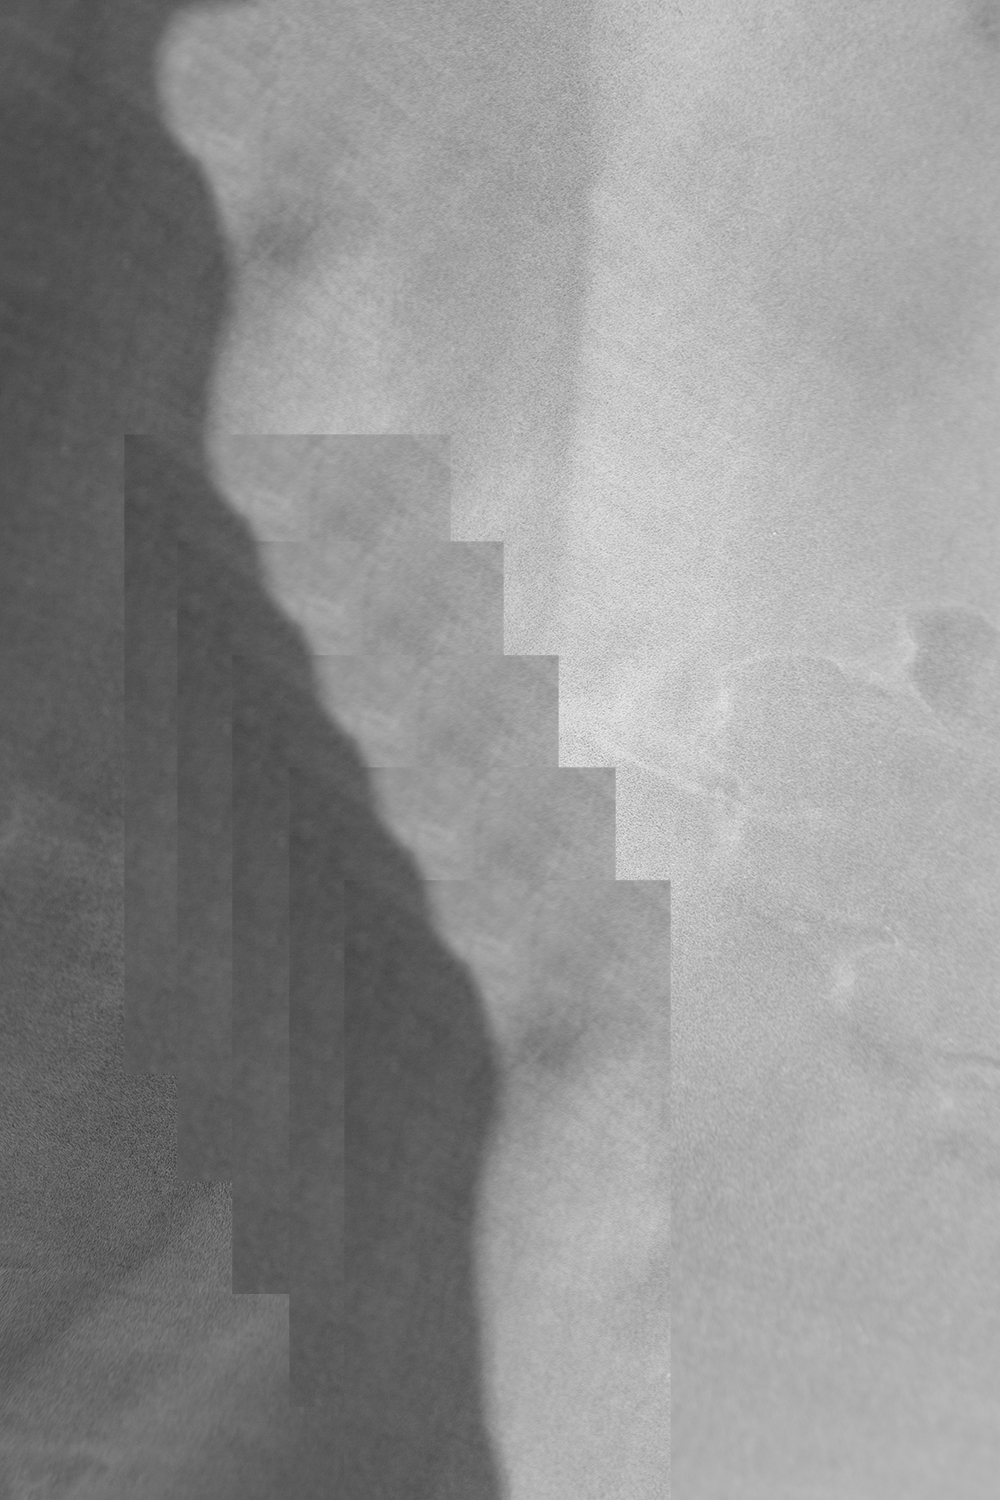 carina martins, eikasia - fotografia cinza com formas geometricas com rectangulos-2